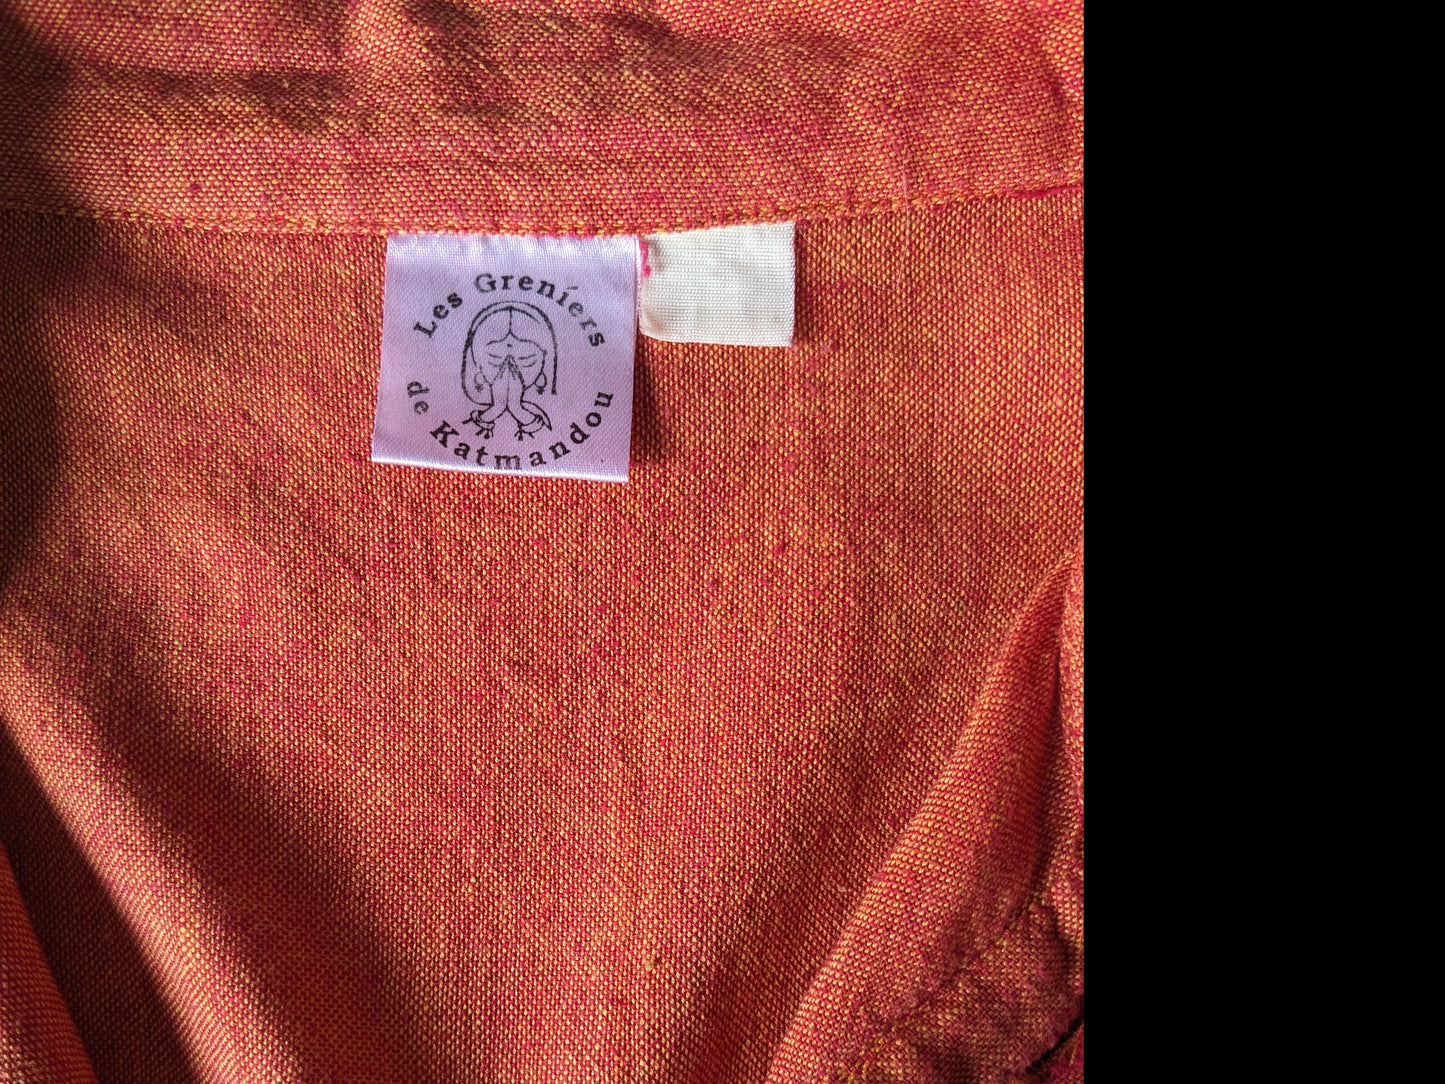 Chemise Le Grenier de Katmendou avec mao / agriculteurs / collier debout. Orange rouge mélangé. Taille L.